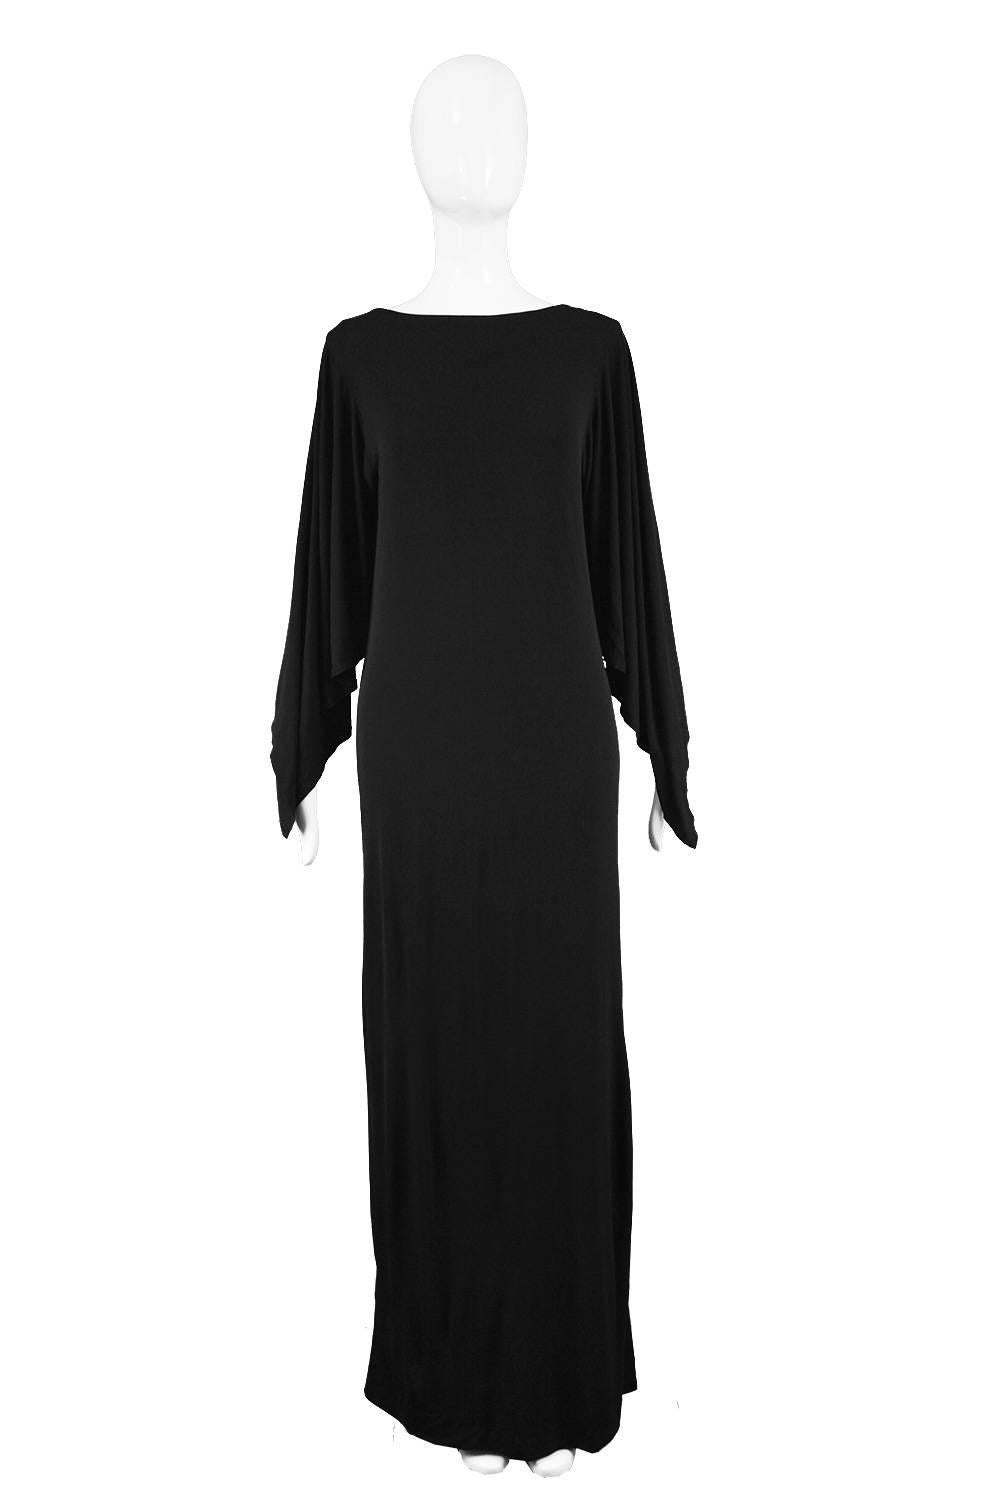 Givenchy Vintage 1970s Nouvelle Boutique Black Jersey Maxi Column Dress

Estimated Size: UK 12-14/ US 8-10/ EU 40-42. Please check measurements 
Bust - 38” / 96cm 
Waist - 34” / 86cm (meant to have a loose fit)
Hips - 42” / 106cm
Length (Shoulder to